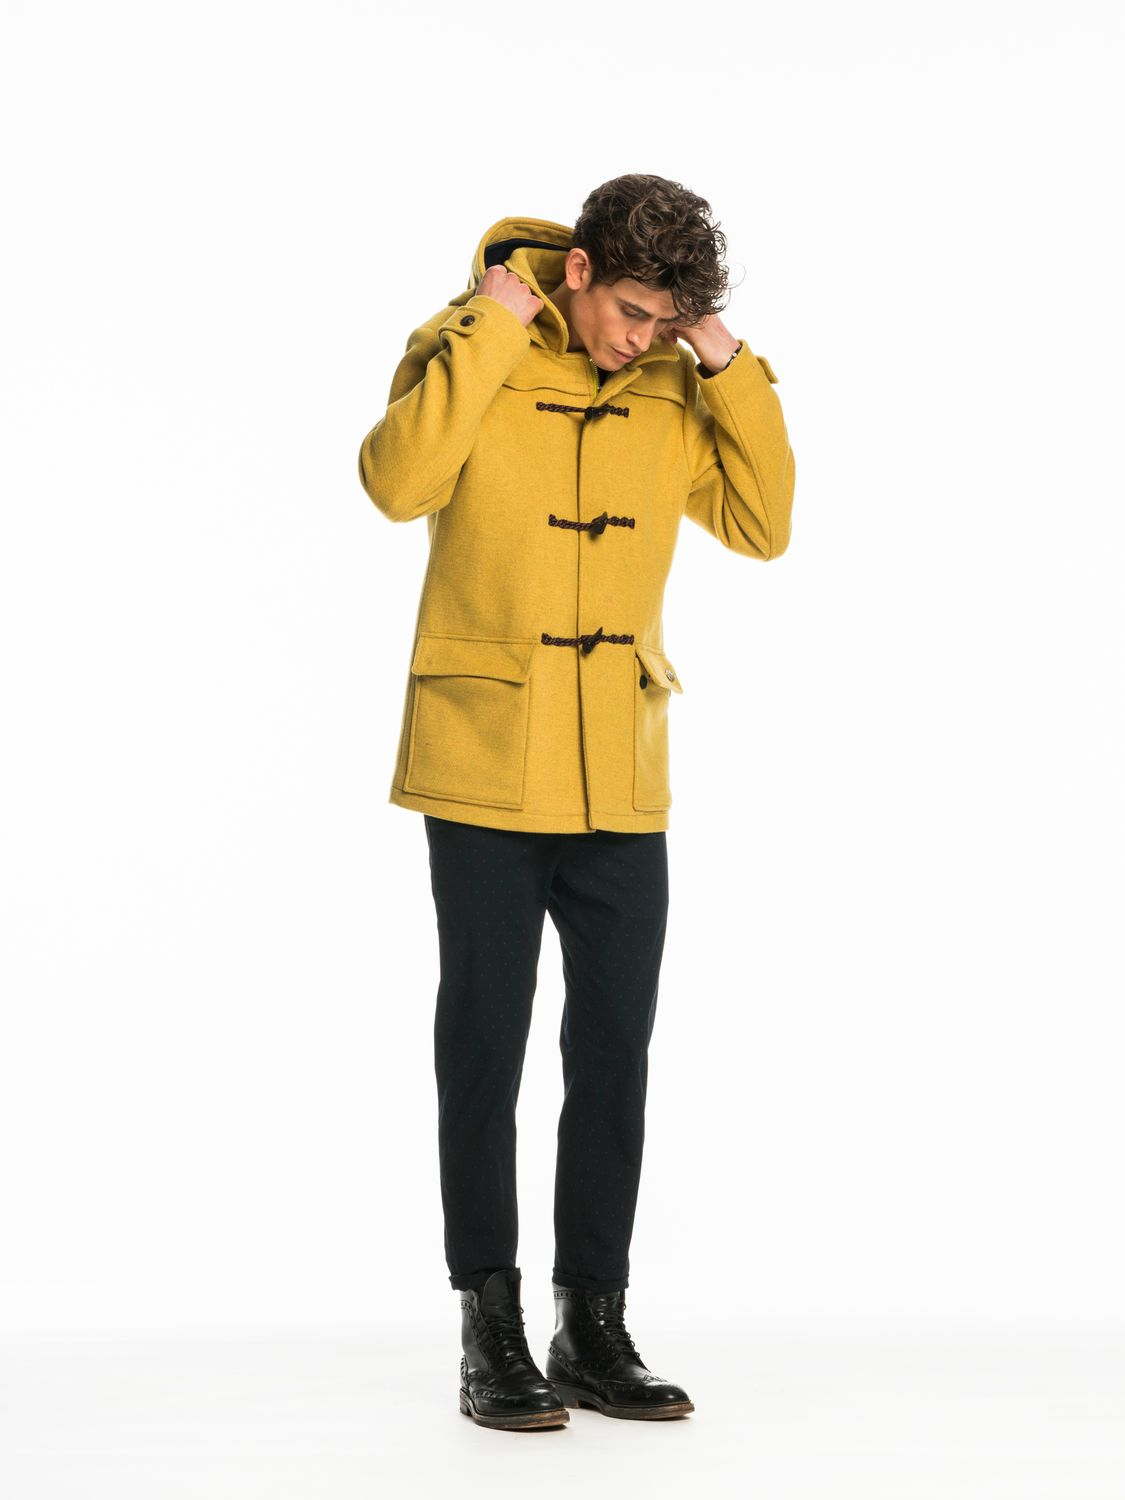 Scotch & Soda Wool Hooded Duffle Coat in Yellow for Men - Lyst